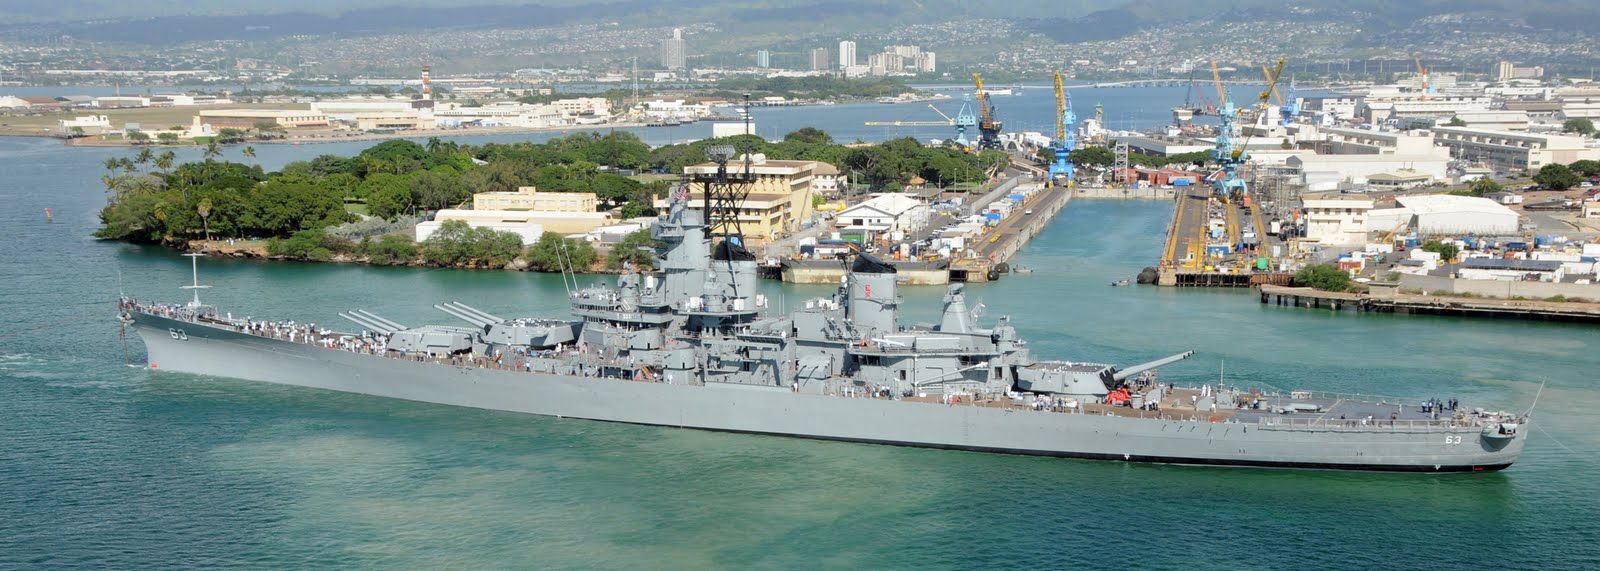 USS Missouri (BB-63) - Pearl Harbor.jpg